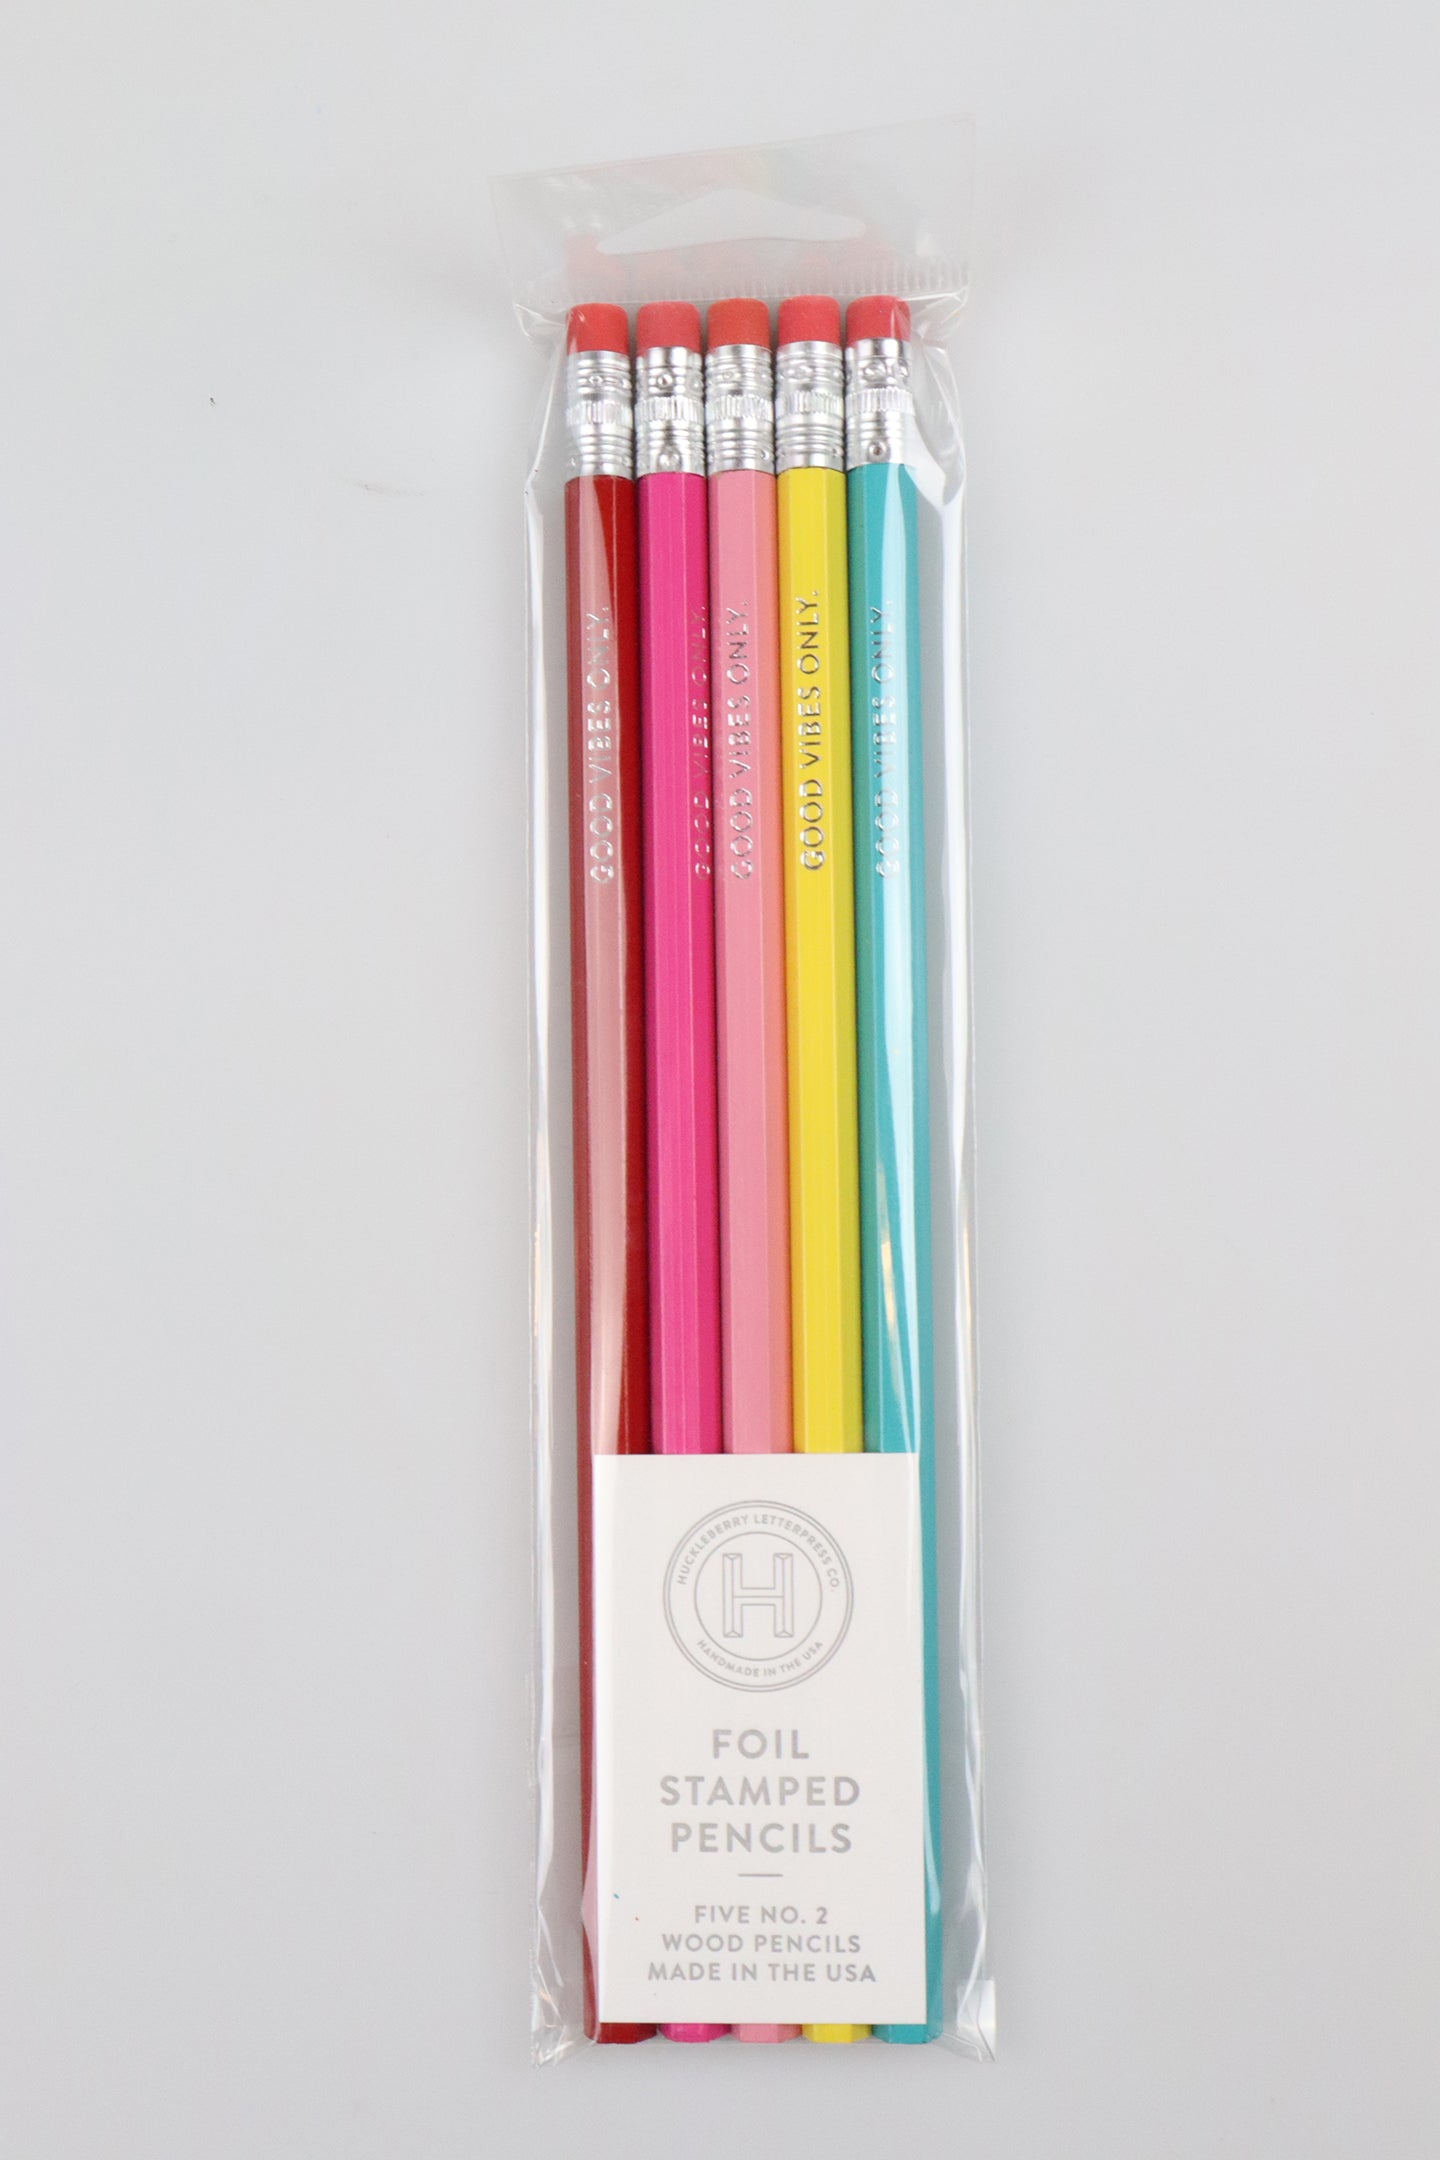 Huckleberry Letterpress Foil Stamped Pencils